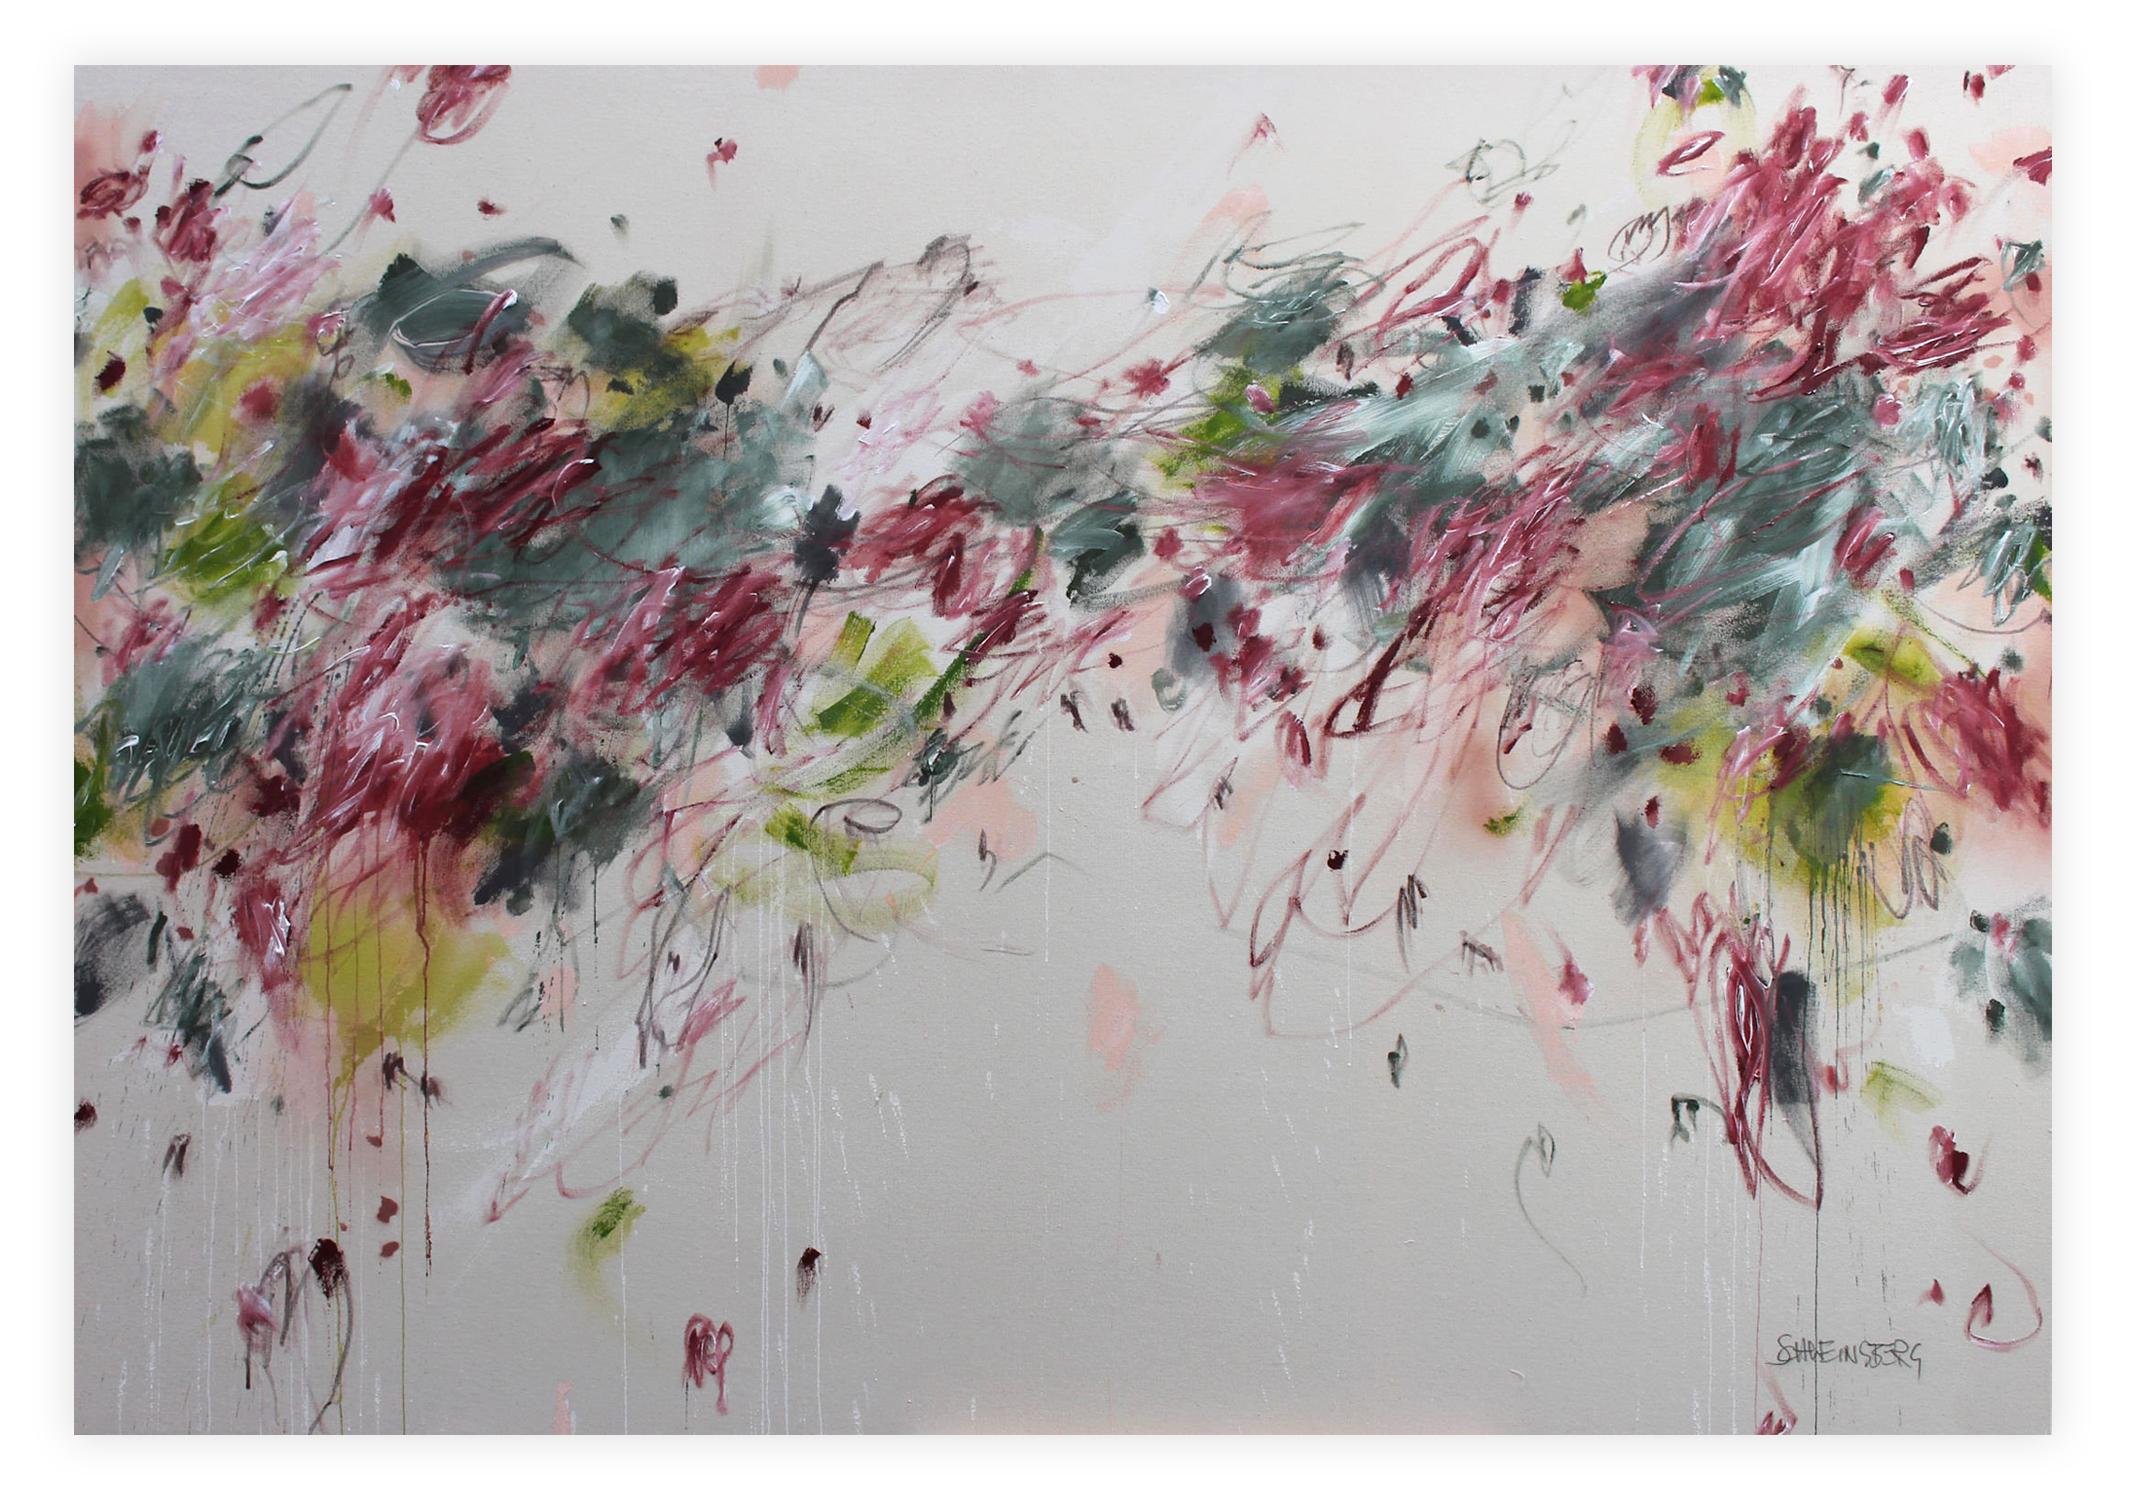 Abstract Painting Daniela Schweinsberg - Je veux toutes les roses (peinture abstraite)